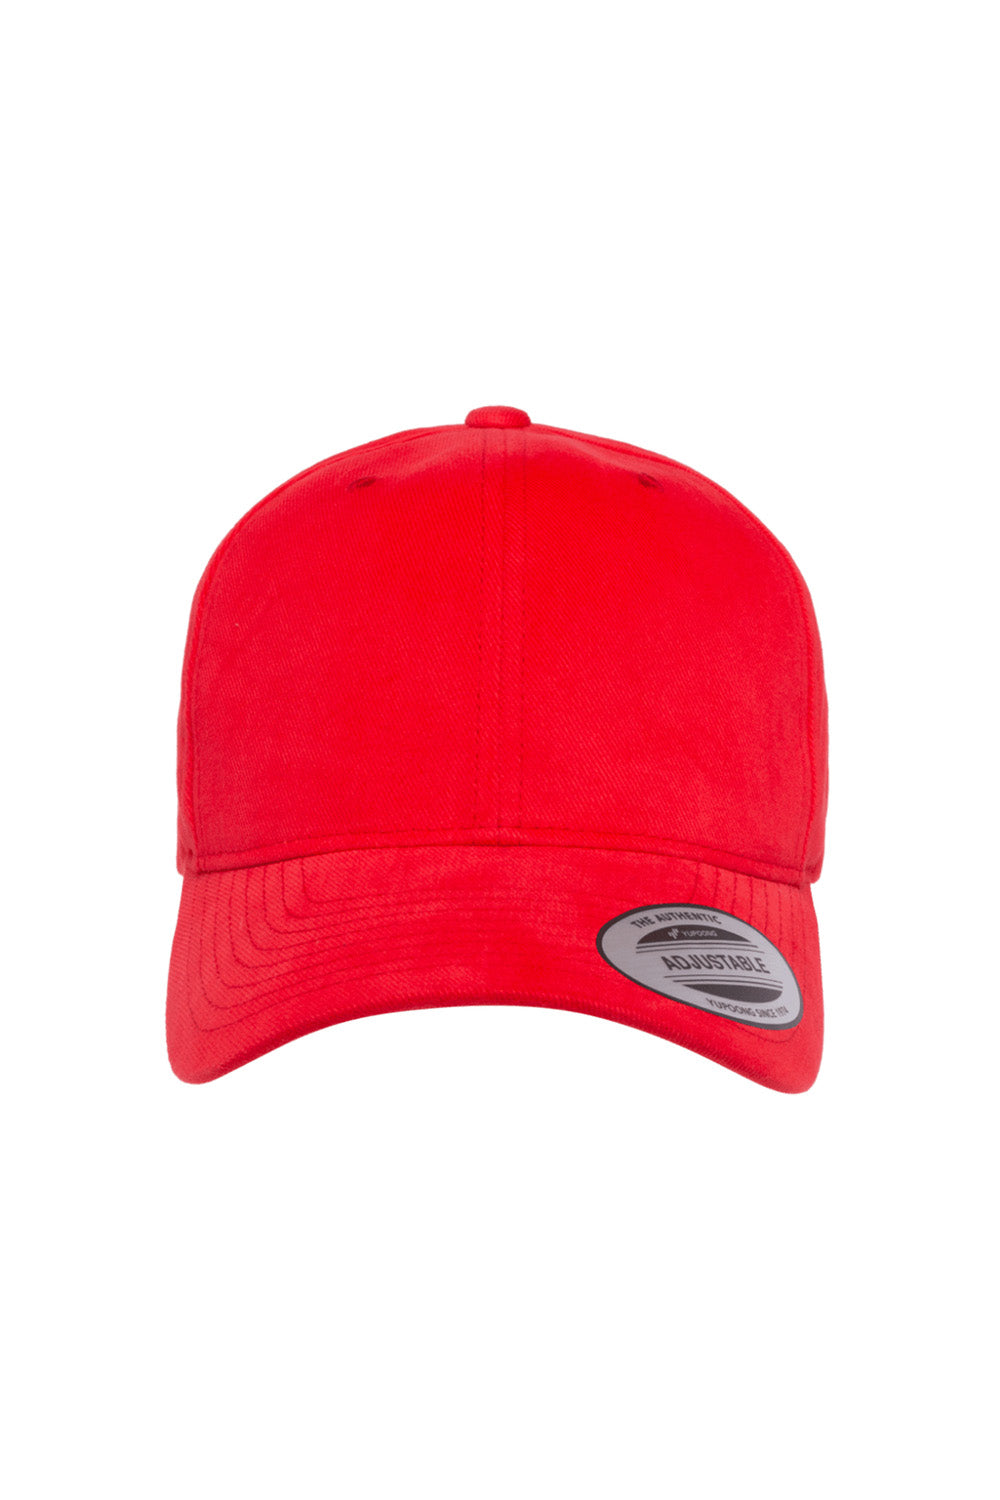 Yupoong 6363V Mens Adjustable Hat Red Front